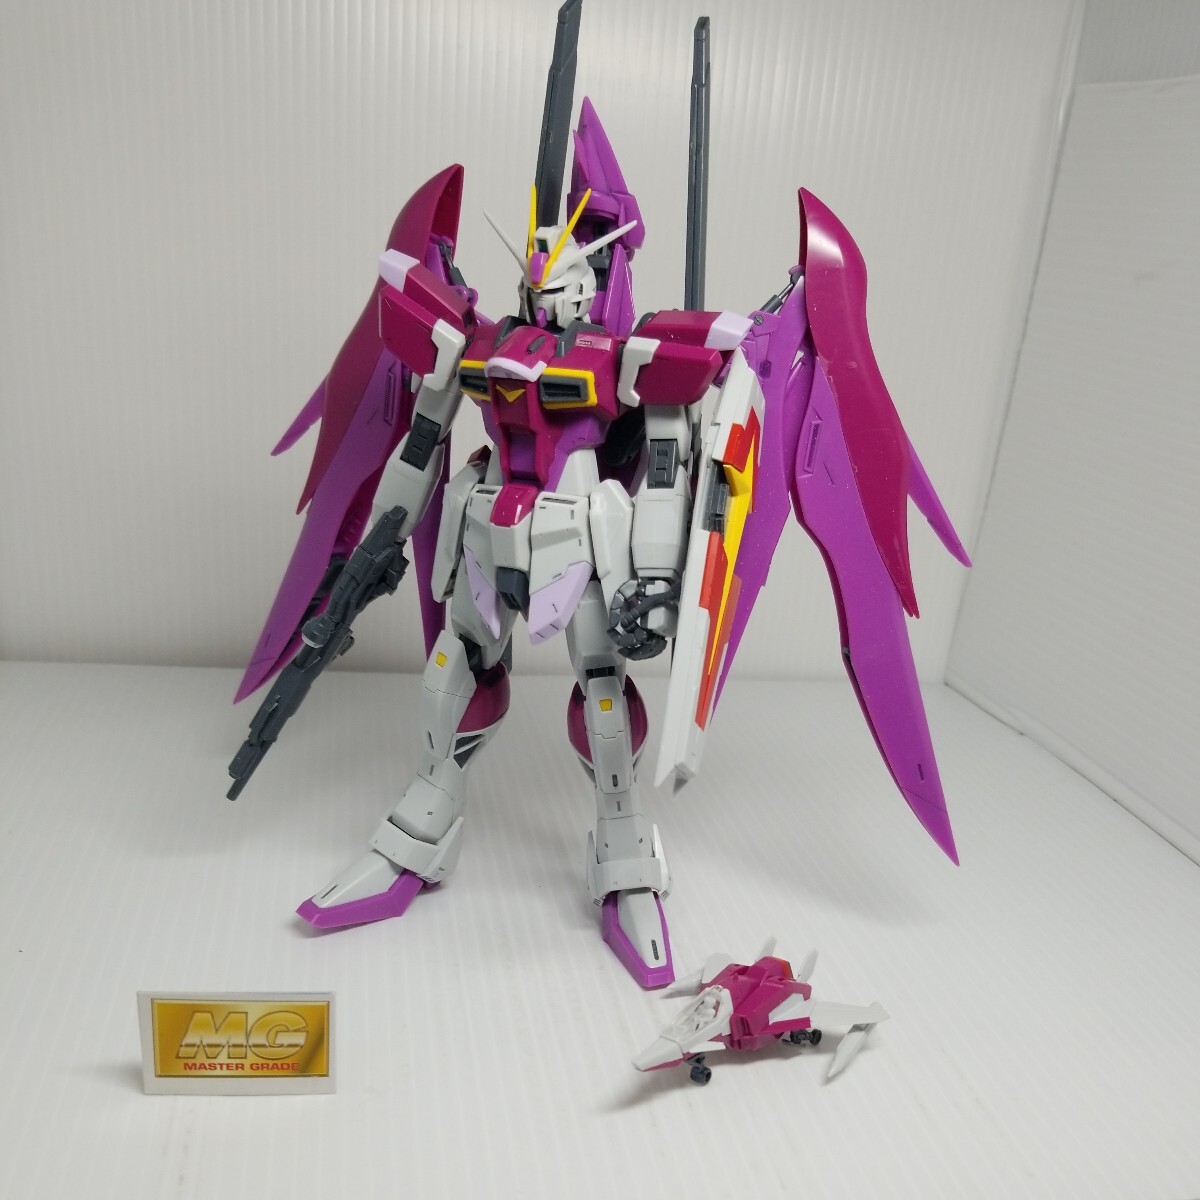 R-180g 4/27 MG Destiny Impulse Gundam включение в покупку возможно gun pra Junk 